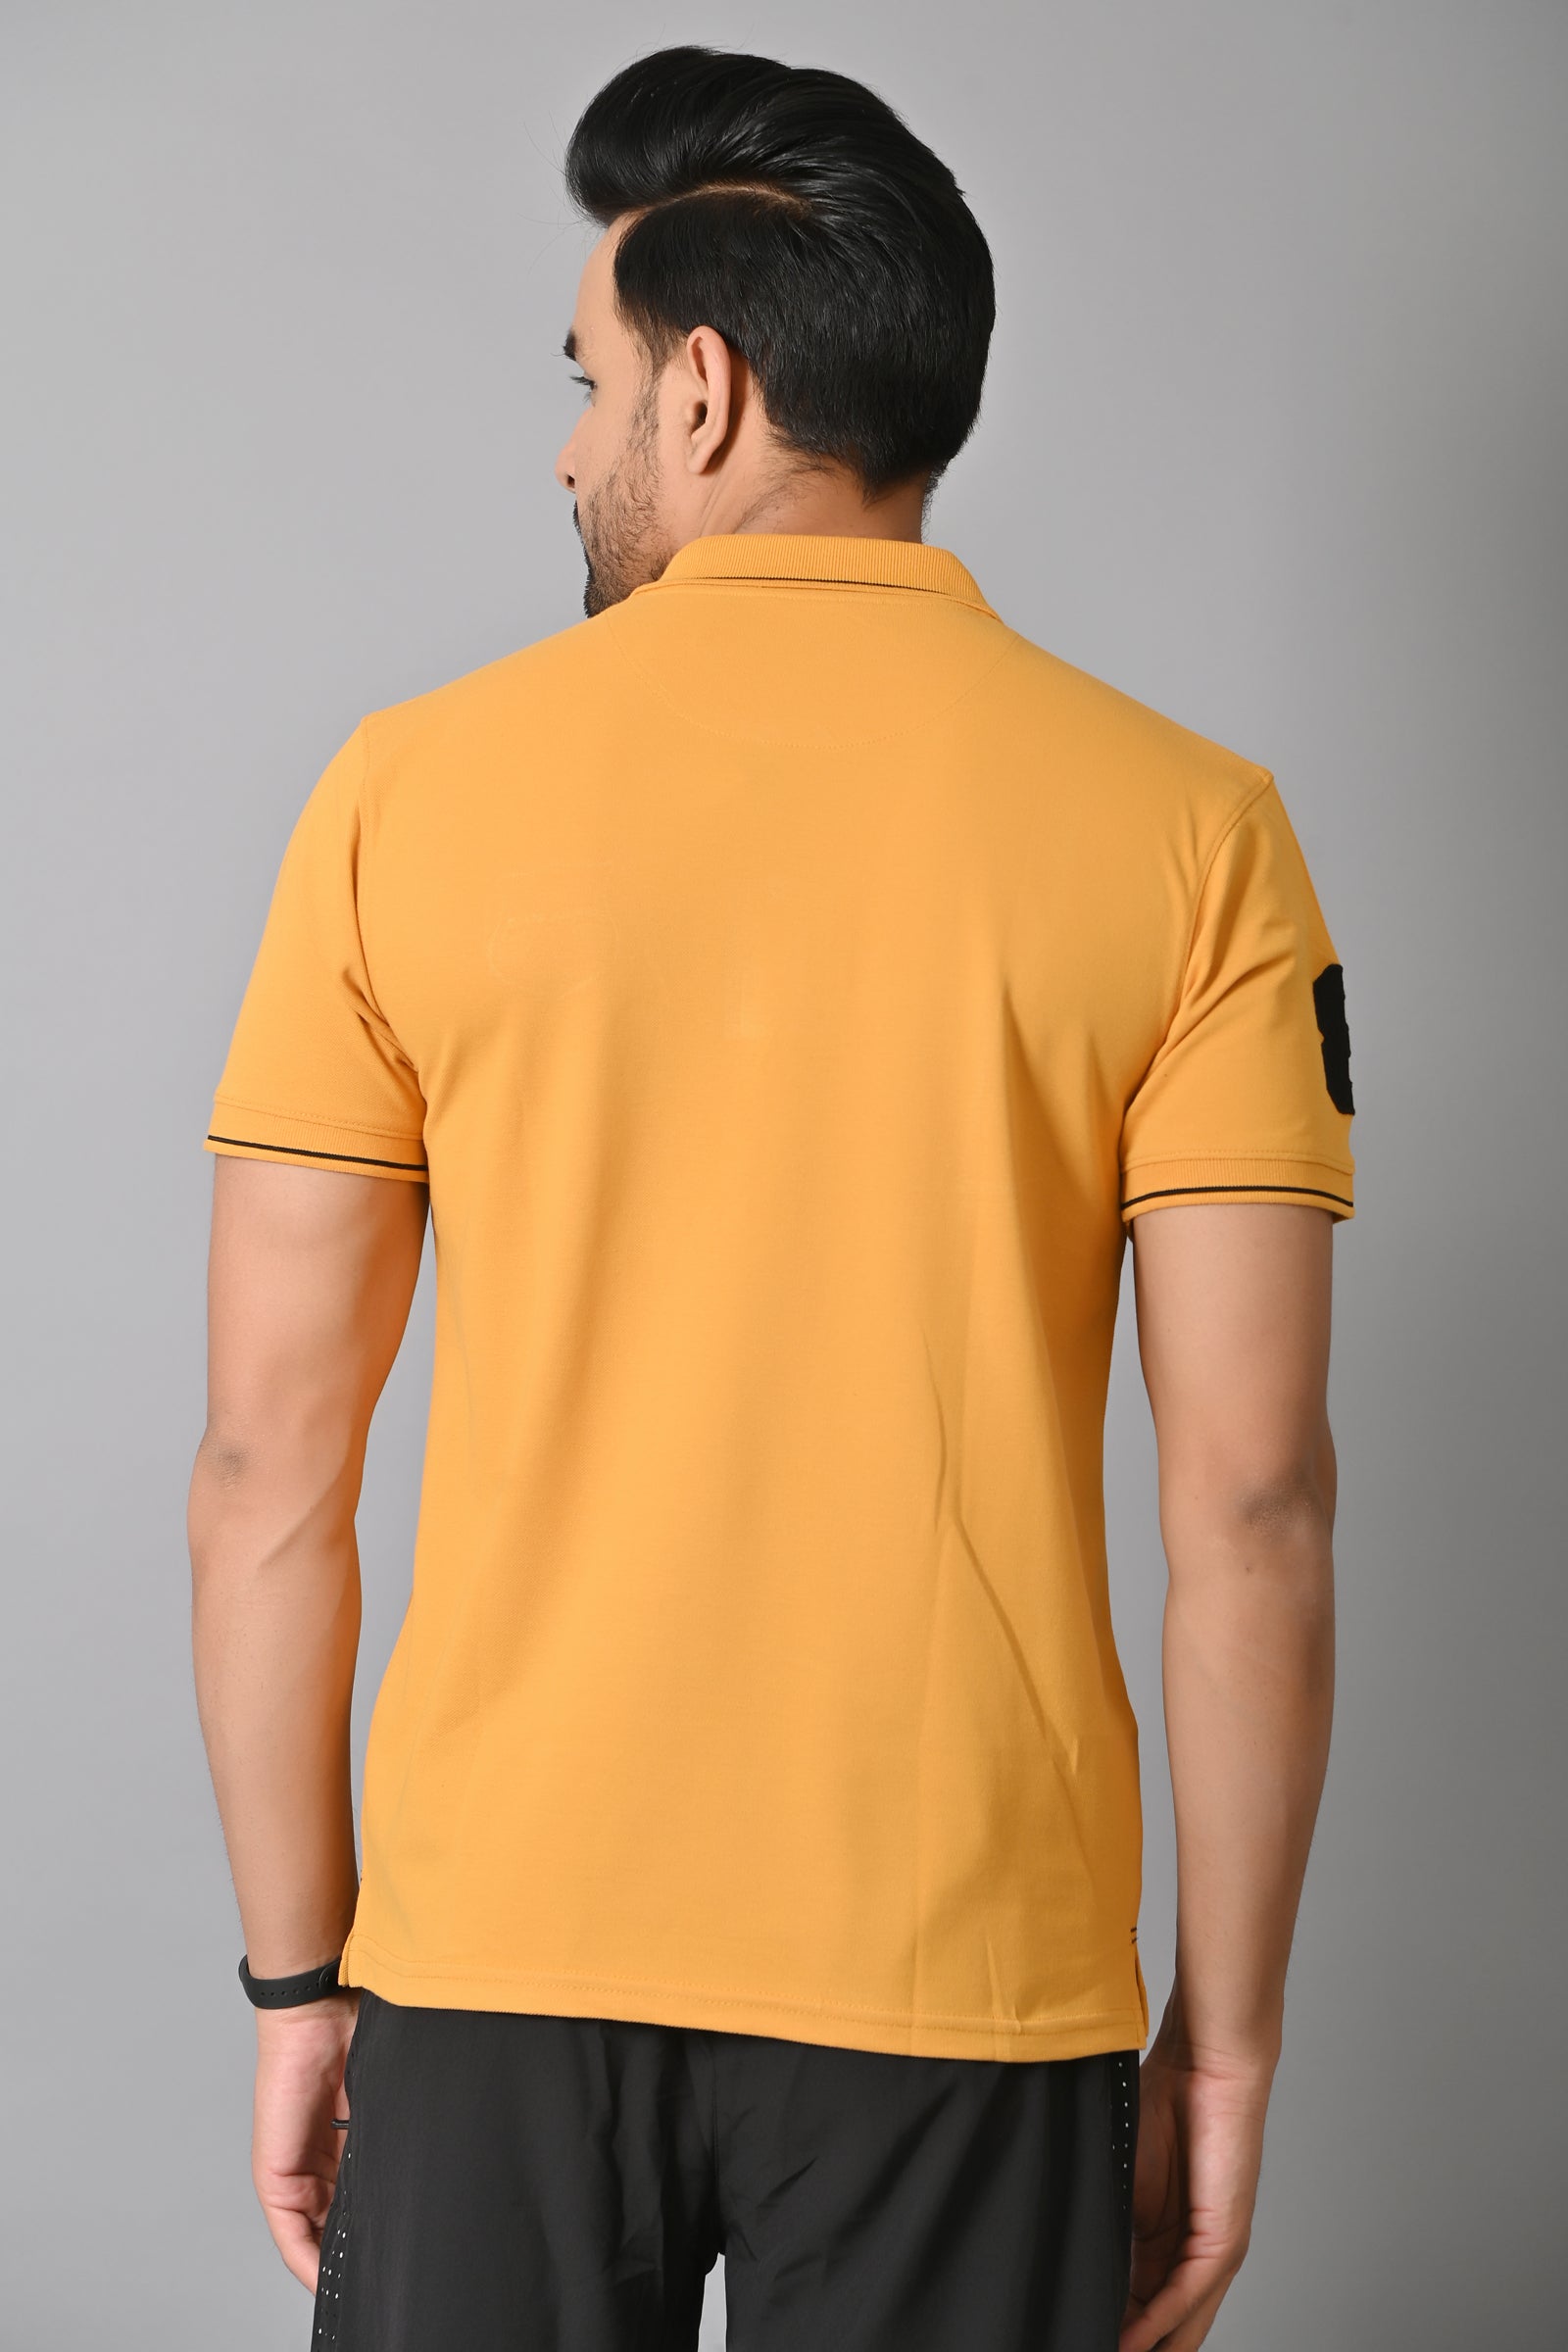 Jaguro Men's Polo Tshirt Mustard